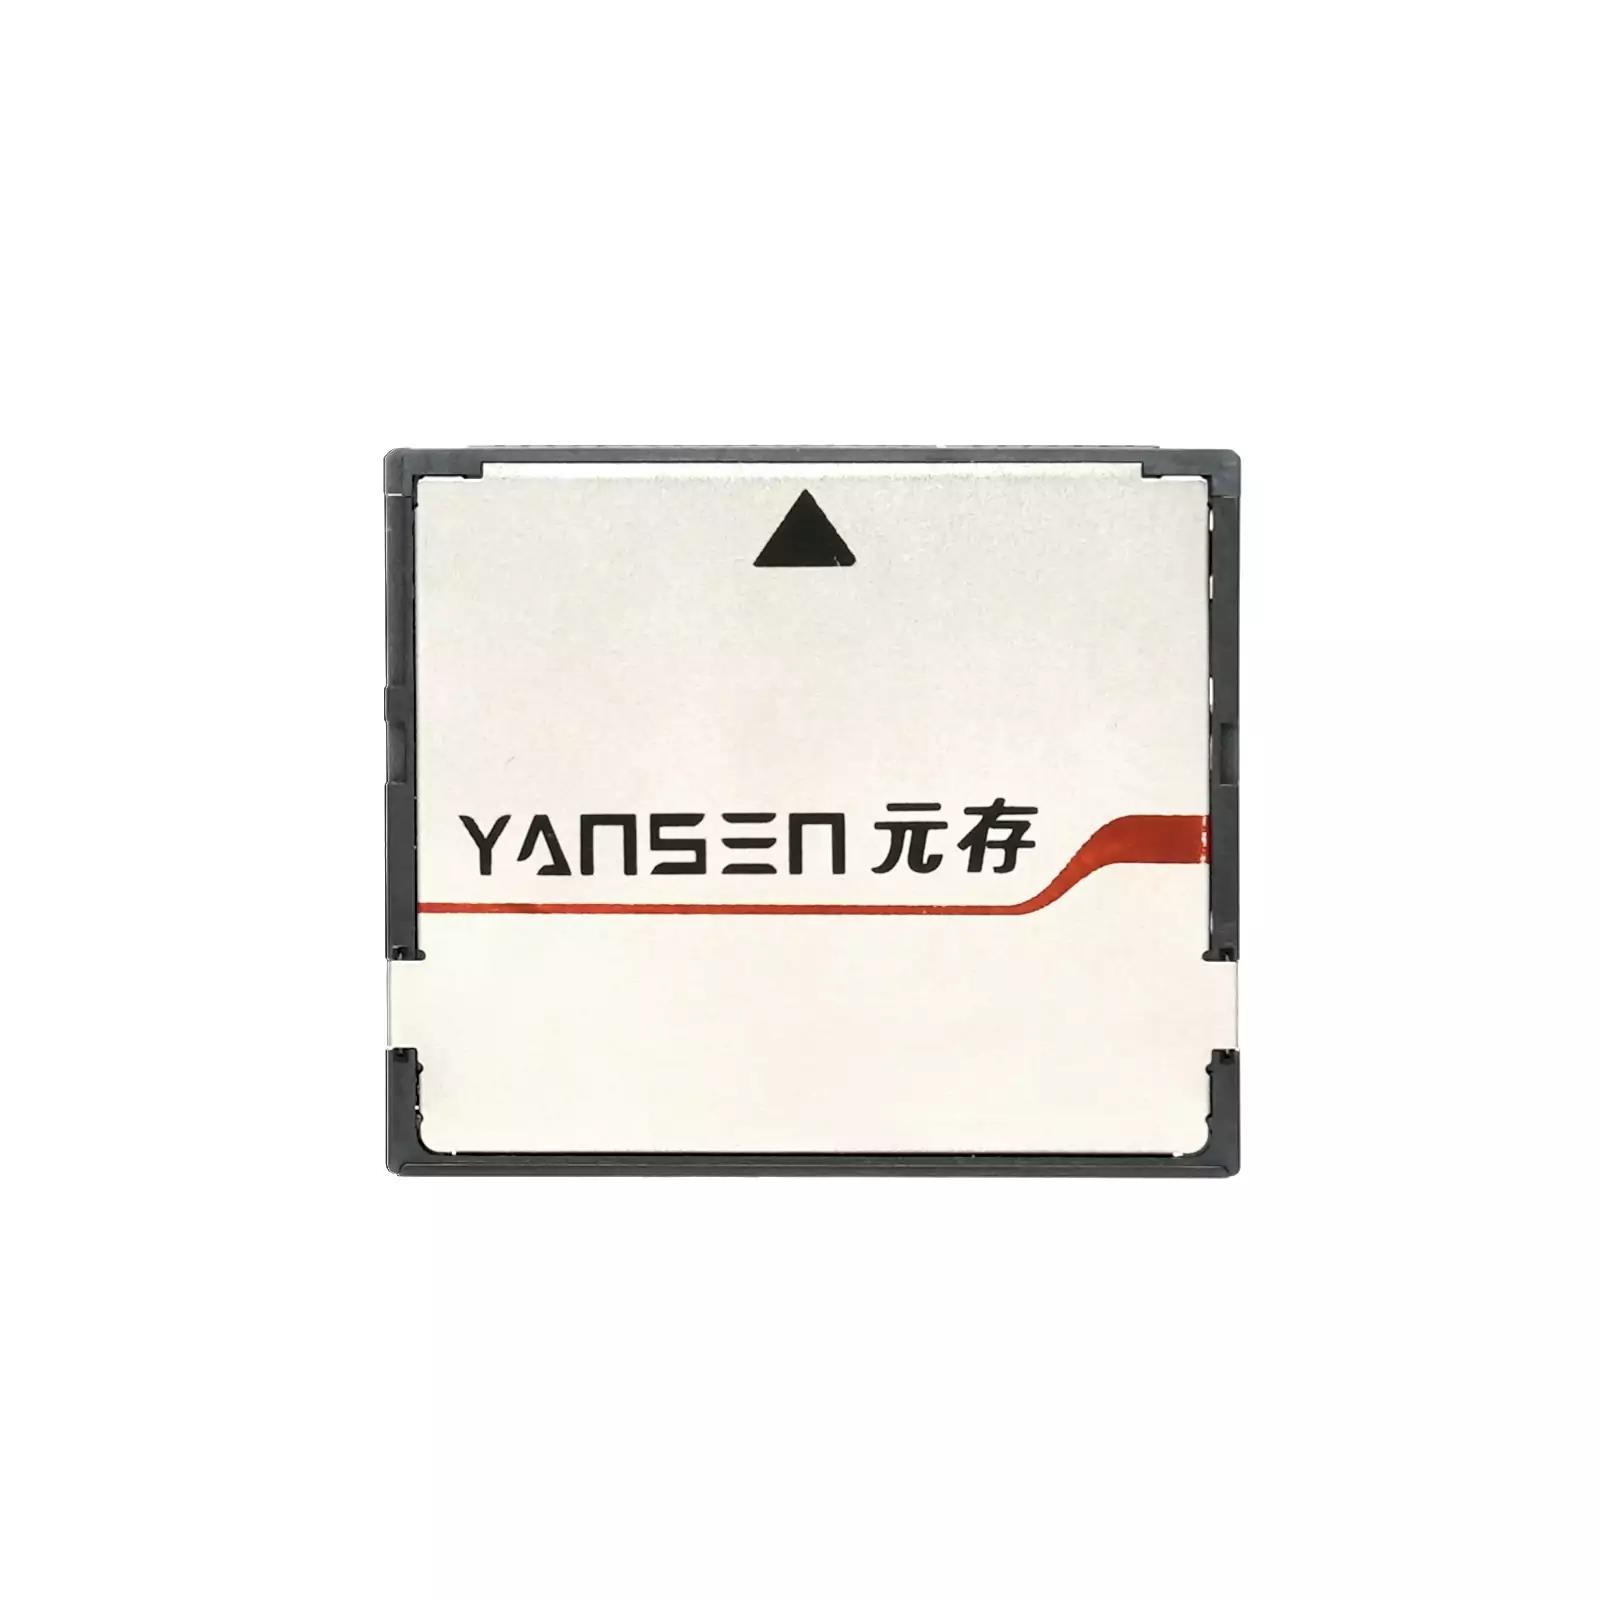 YSCS-128